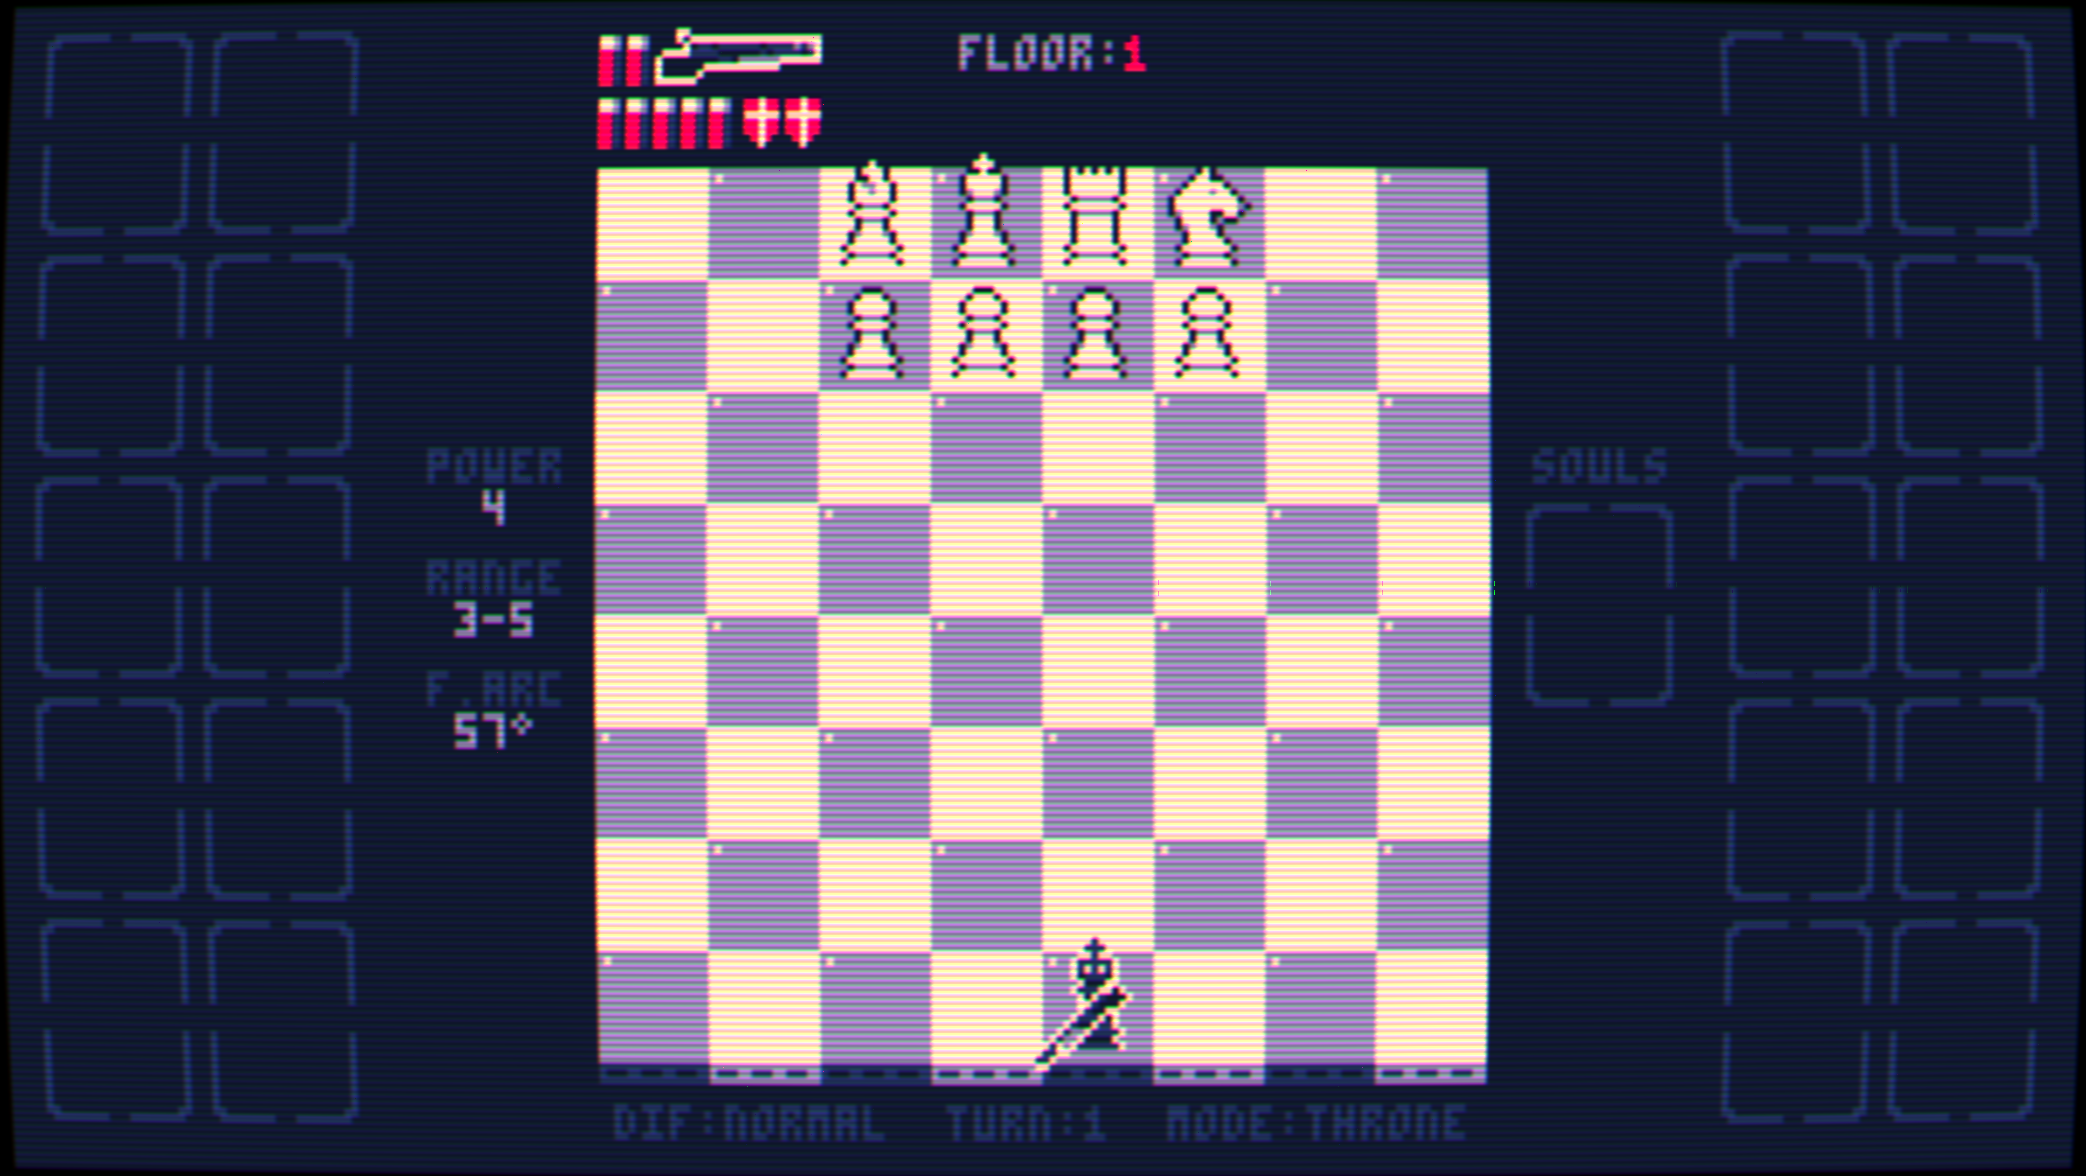 Xadrez encontra Jogos de Luta em Checkmate Showdown